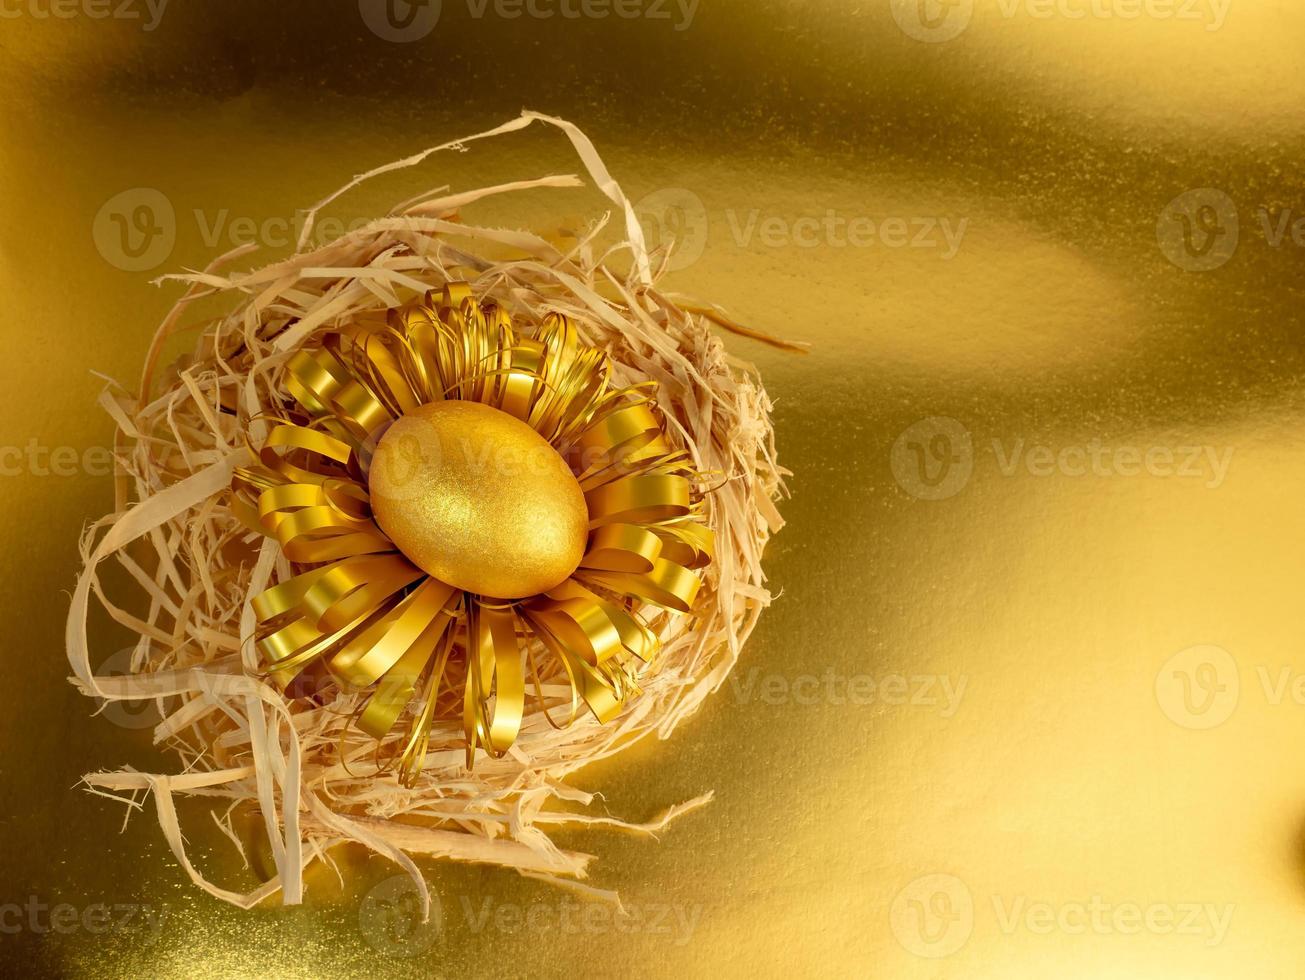 ett påsk ägg, målad guld och svart, lögner i en bo på en glittrande guld bakgrund foto